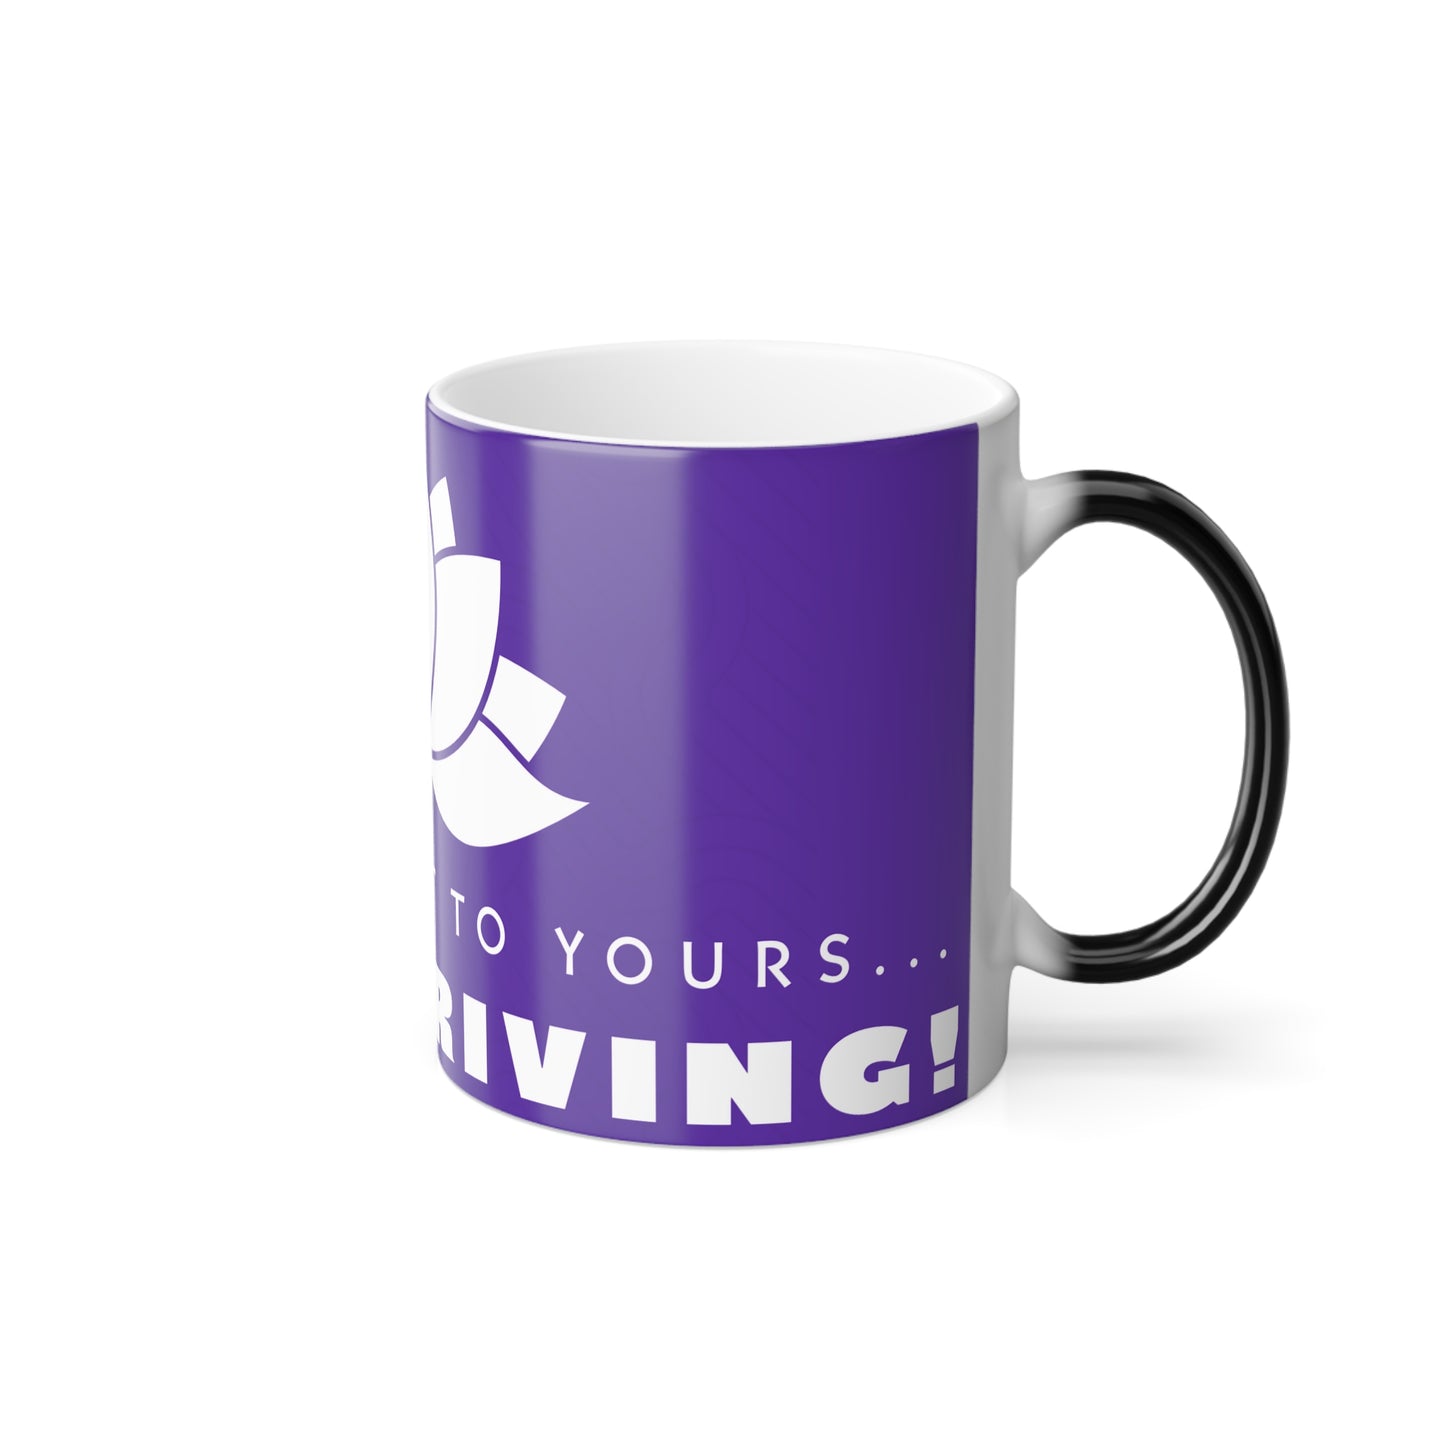 Keep Thriving! Color Morphing Mug, 11oz